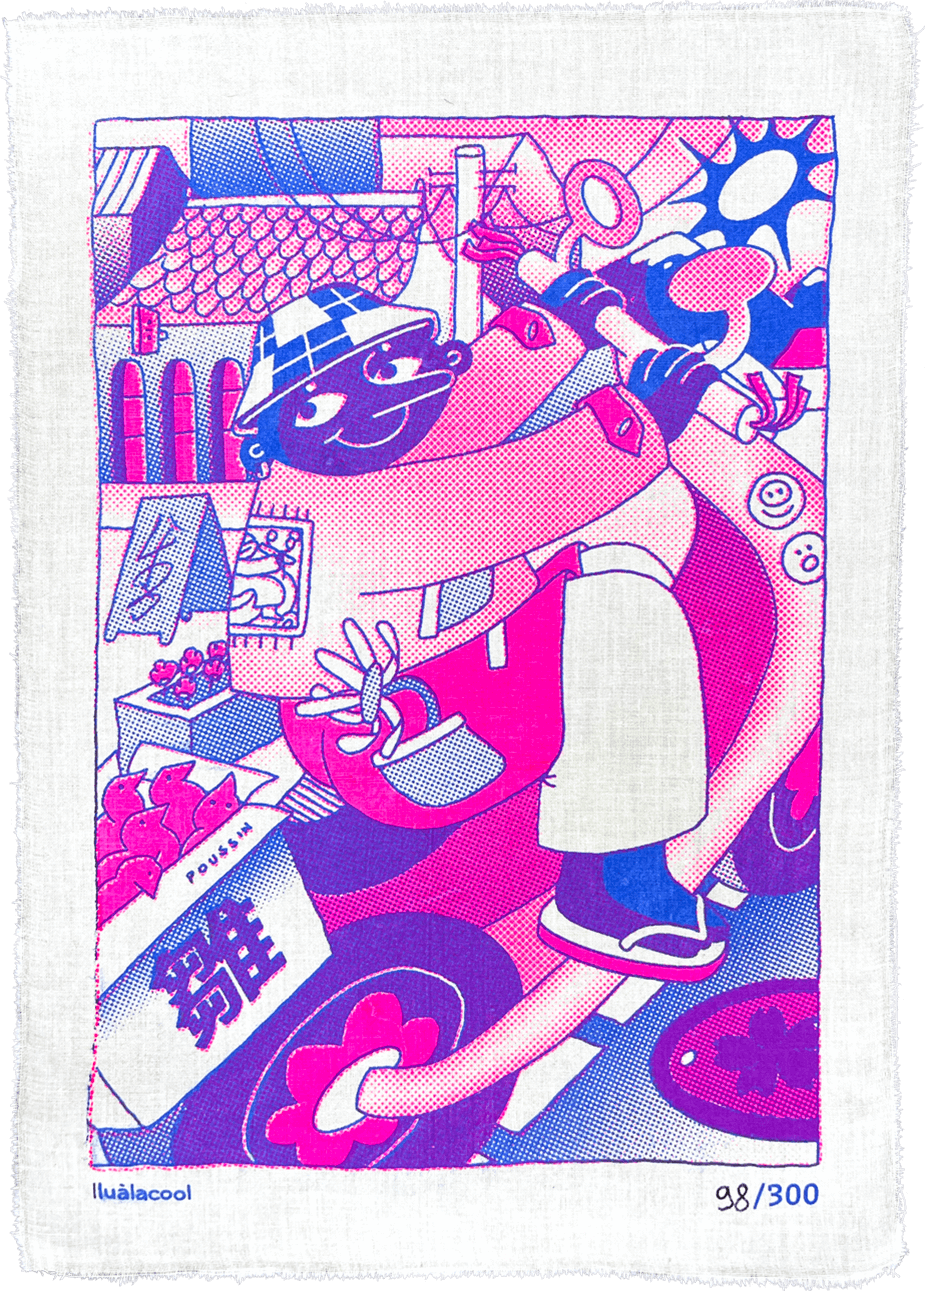 Oeuvre de Illualacool, une artiste lyonnaise pour sa collaboration avec Bisart. Elle montre un personnage faisant du scooter avec des couleurs vives.